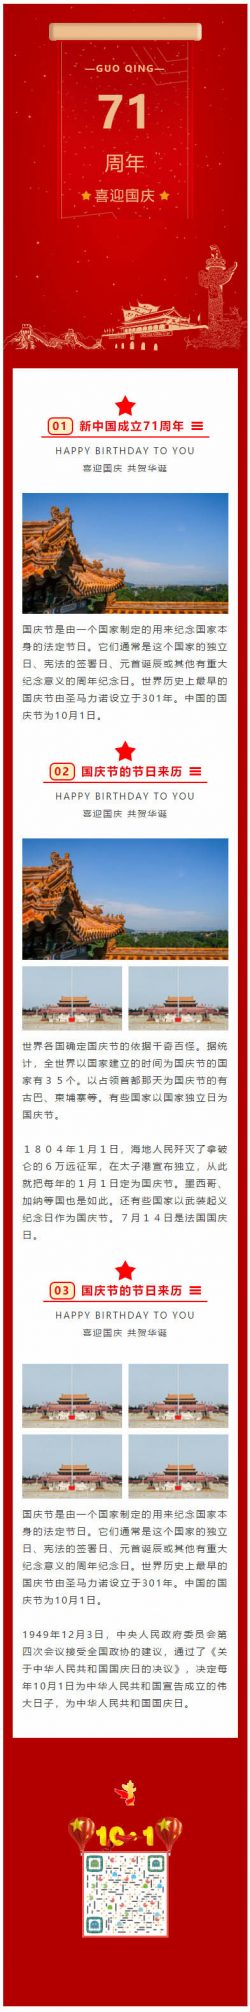 2020国庆节71周年公众号推文模板红色党政风格推送图文素材